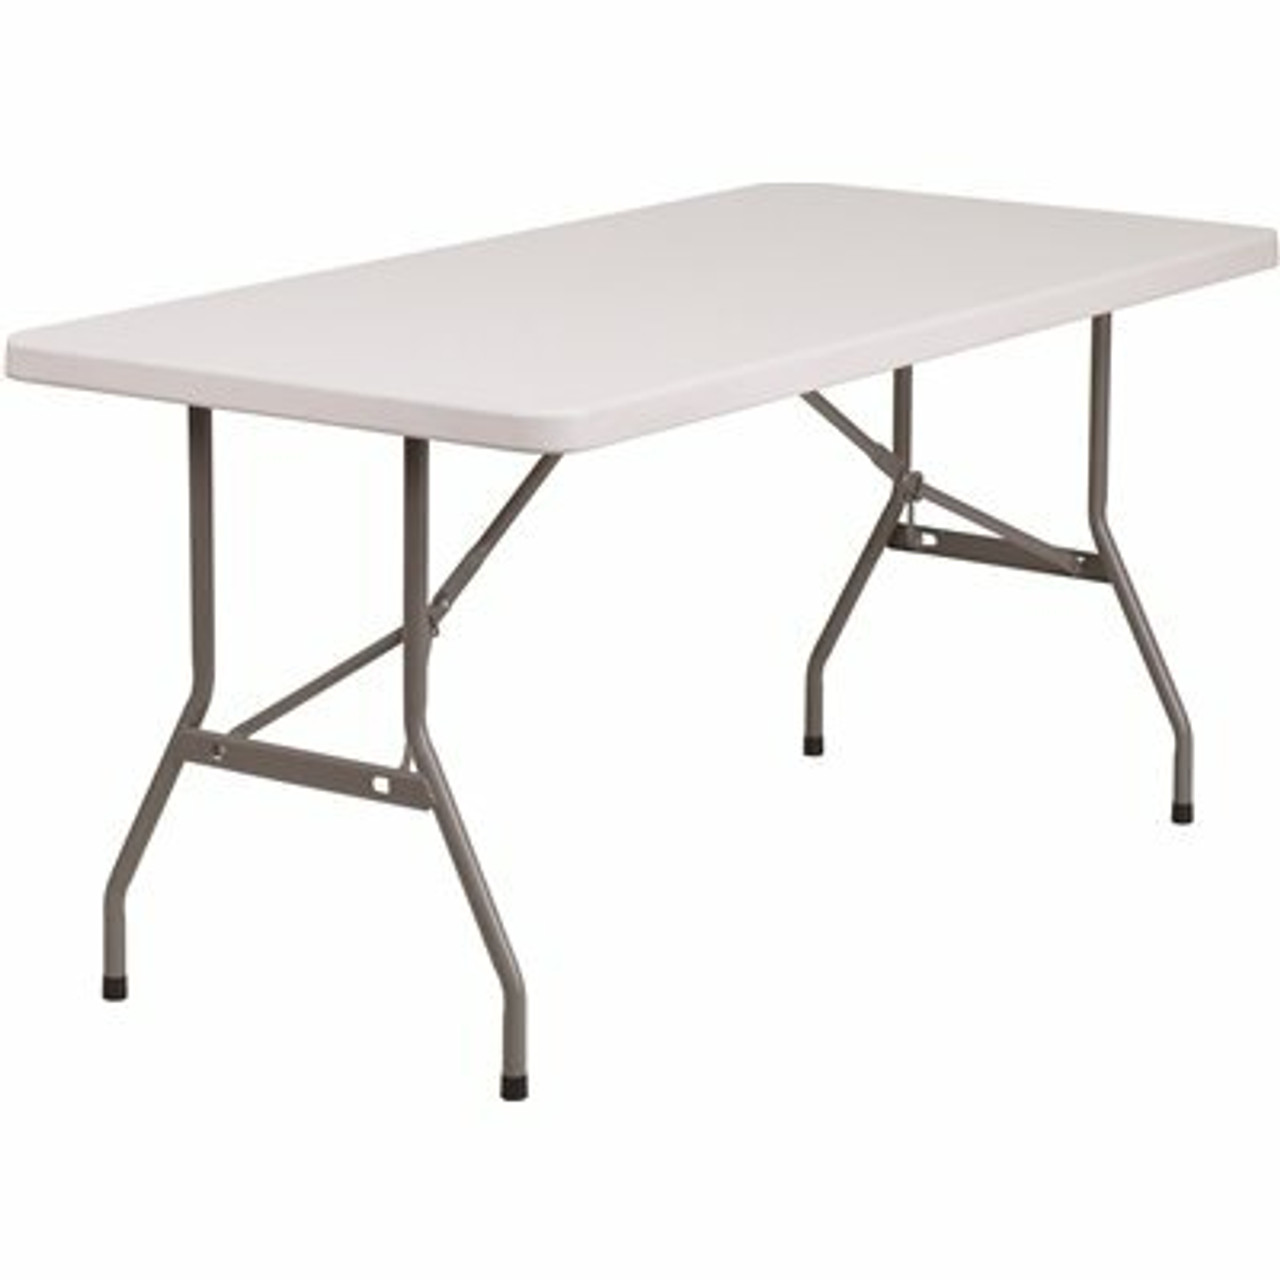 60 In. Granite White Plastic Tabletop Metal Frame Folding Table - 308685843